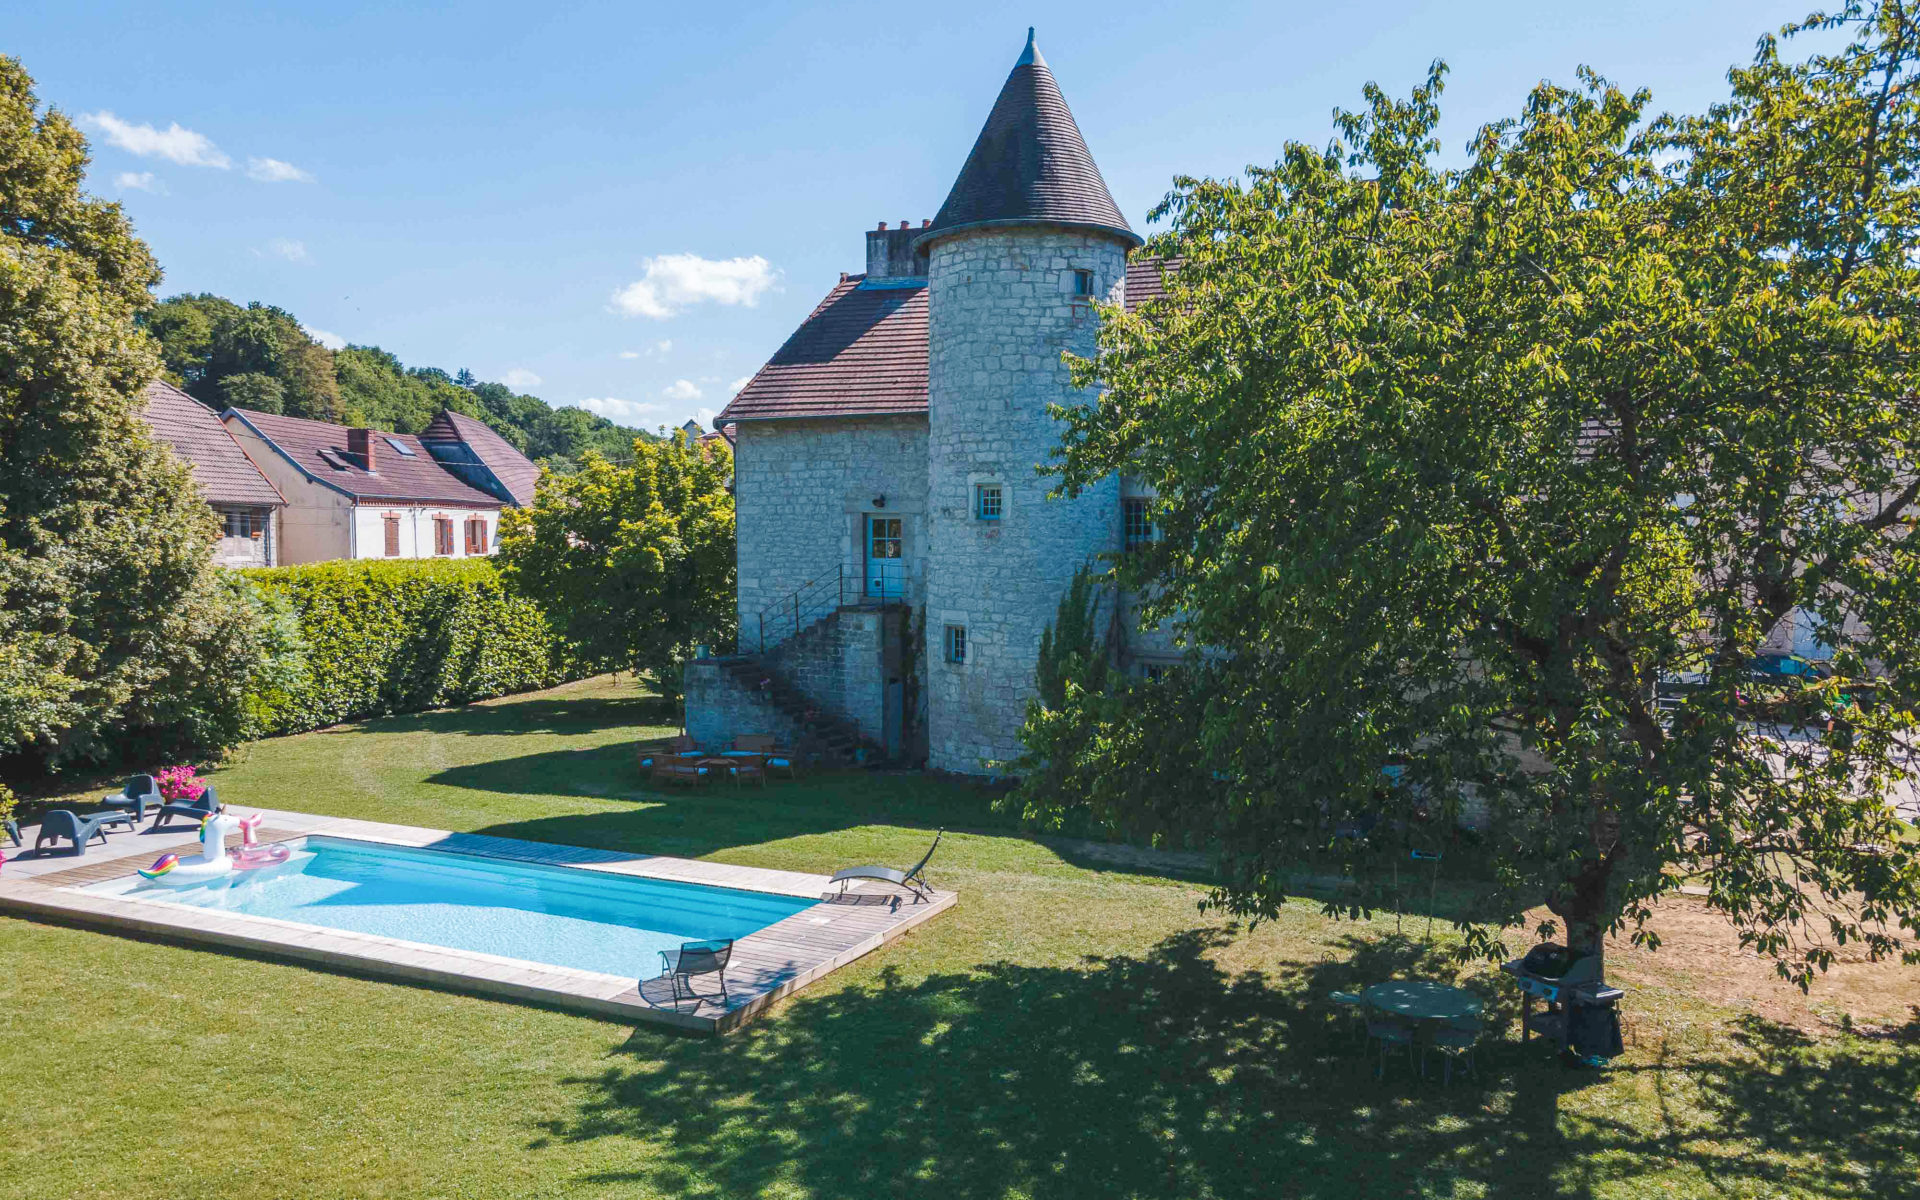 Château à vendre - FRAISANS - Agence immobilière Arrière-Cour - Spécialiste en immobilier de prestige et de caractère dans le Jura